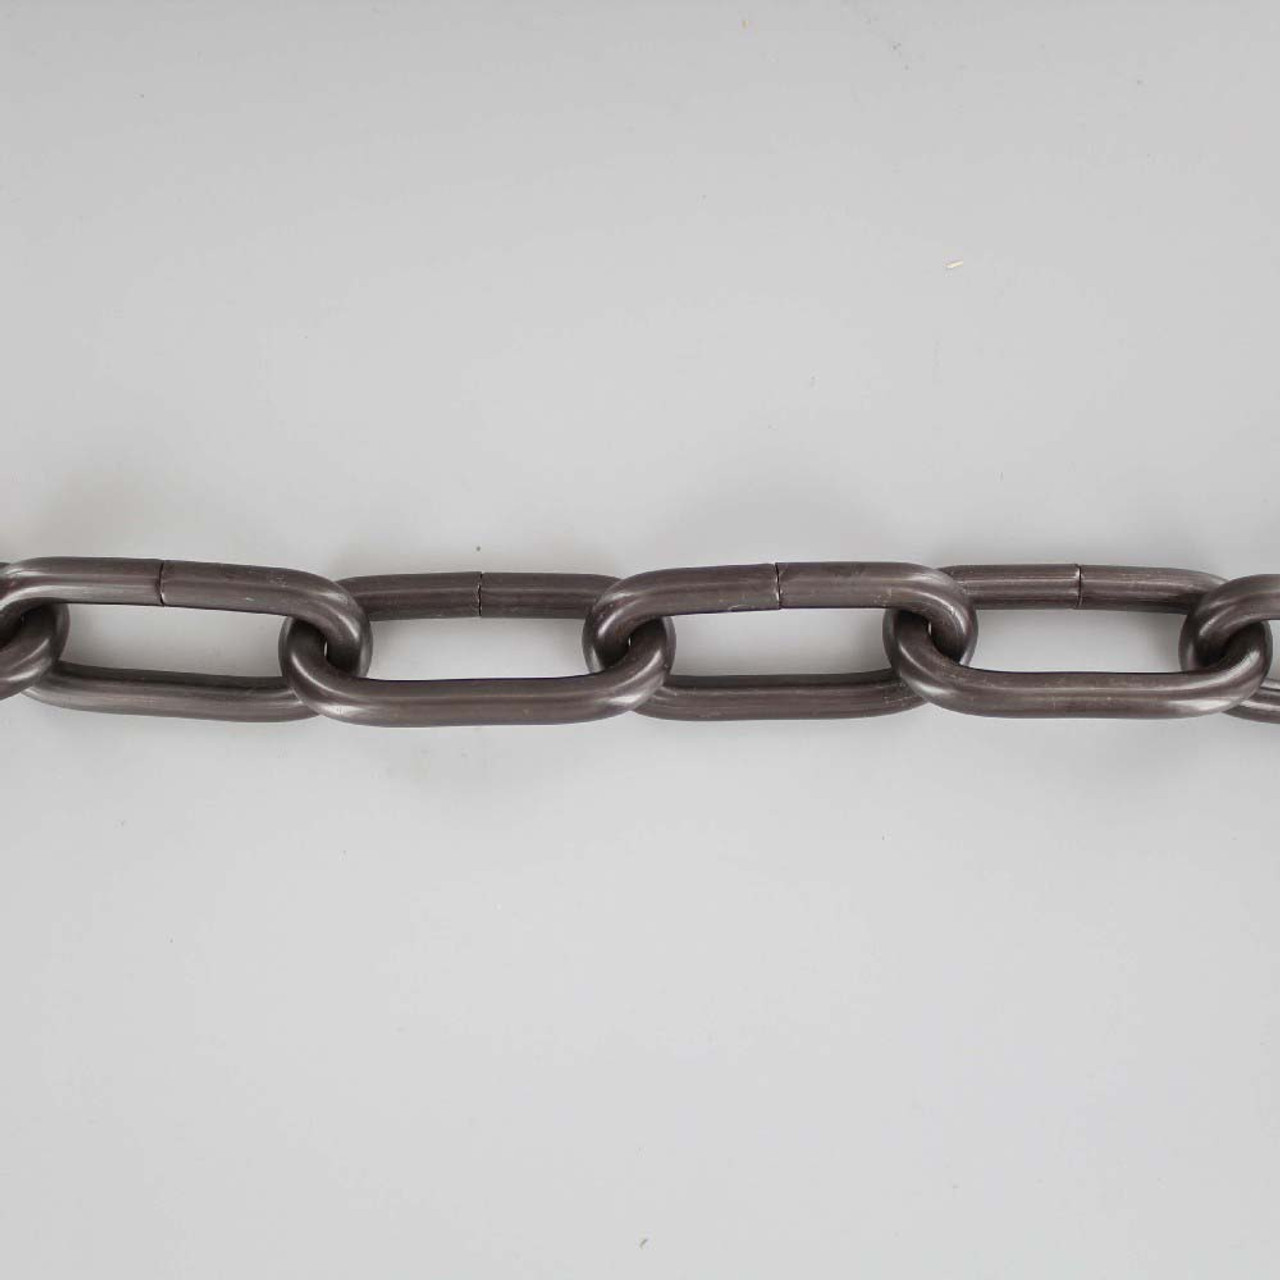 1-1/4in Diameter Round Link Steel Chain - Antique Brass Finish